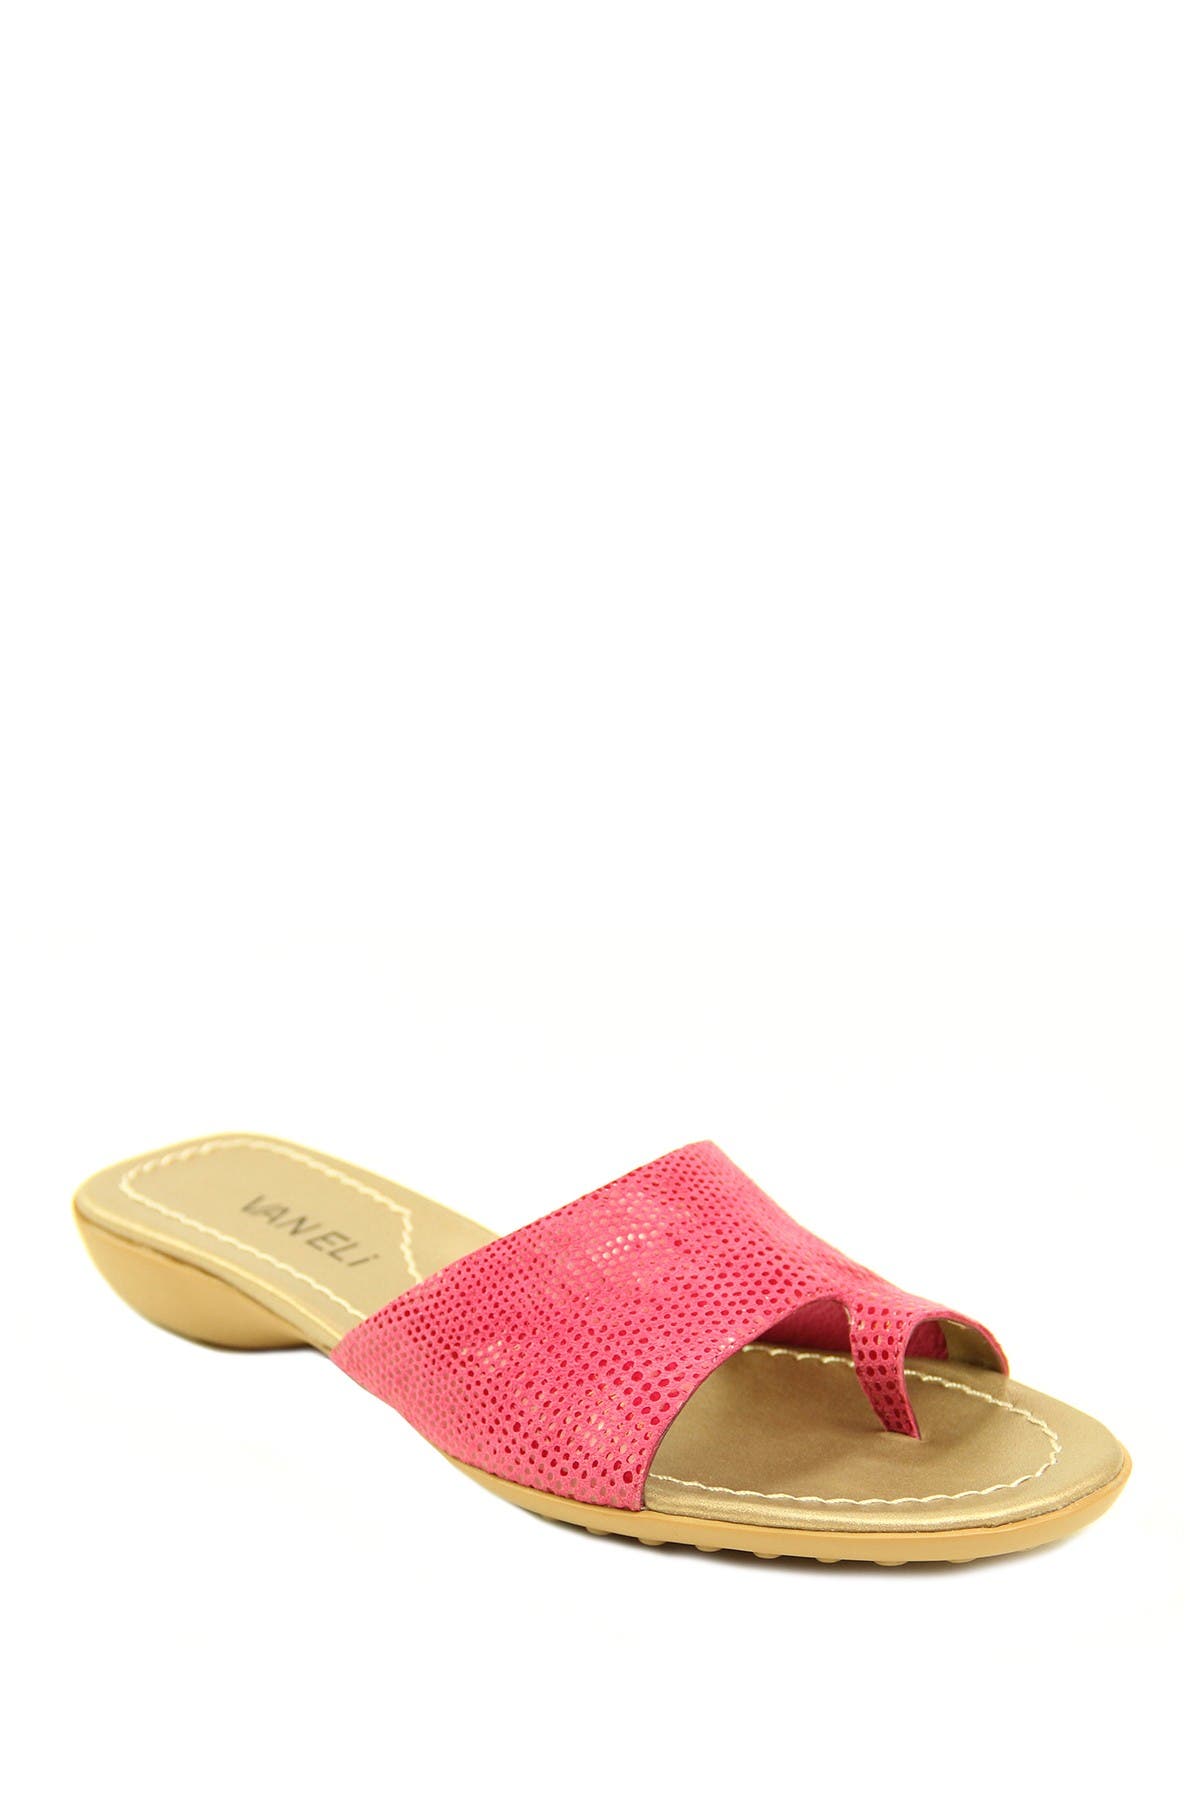 vaneli tallis women's sandal